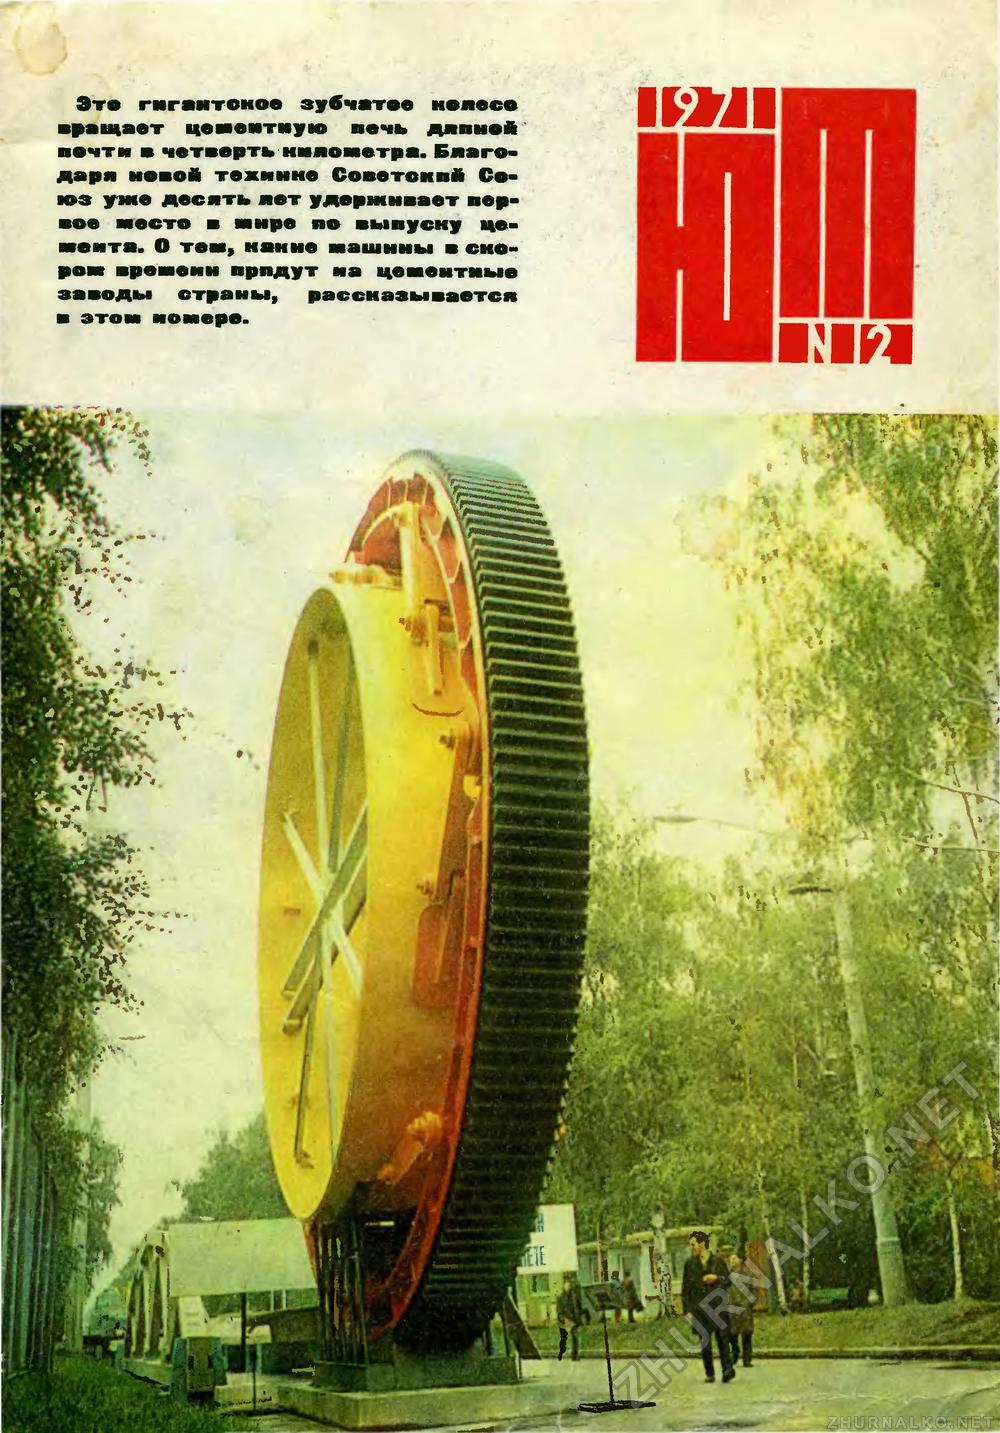   1971-12,  1